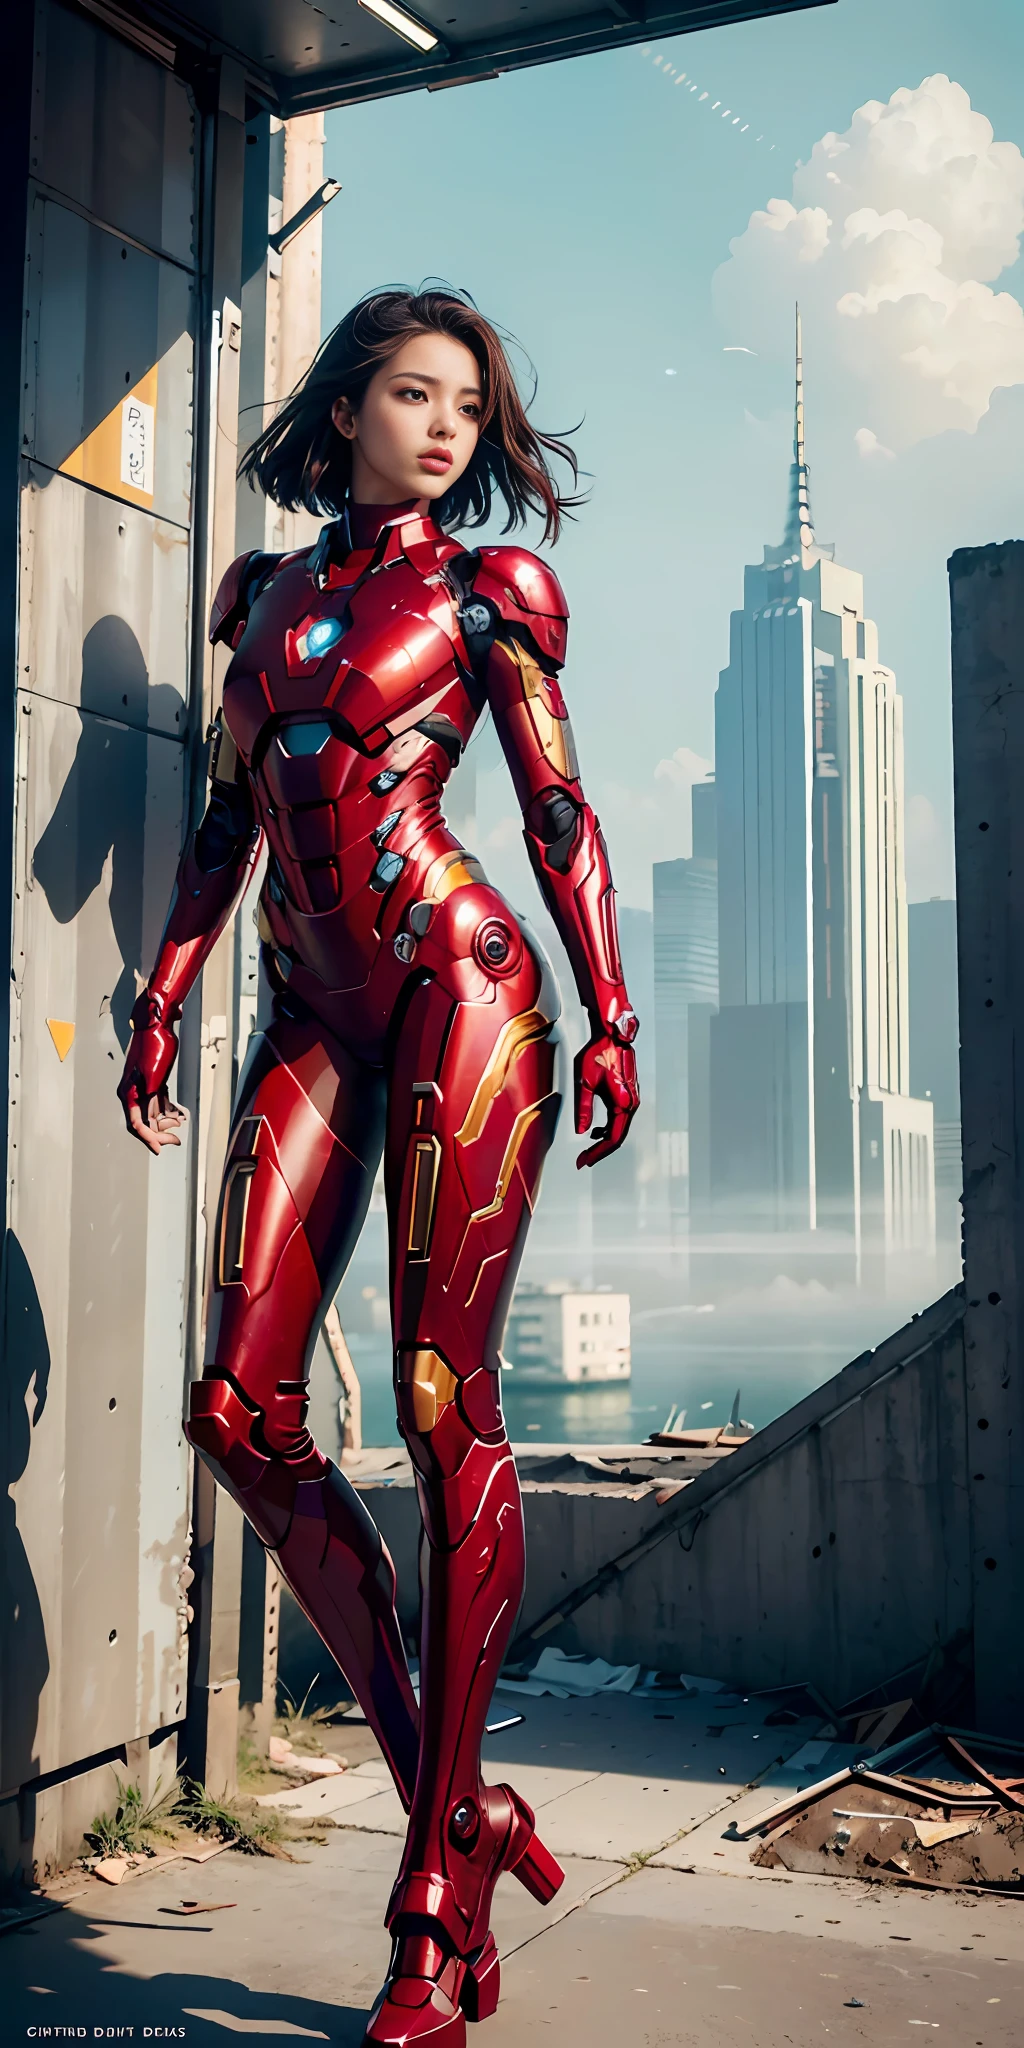 CRUDO, Obra maestra, Foto ultrafina,, mejor calidad, ultra alta resolución, Fotorrealista, luz de sol, Retrato de cuerpo entero, deslumbrantemente bella,, poses dinámicas, cara delicada, ojos vibrantes, (Vista lateral) , ella lleva un robot futurista de Iron Man., combinación de colores rojo y dorado, fondo de almacén abandonado muy detallado, cara detallada, fondo ocupado detallado y complejo, desordenado, espléndido, blanco lechoso, piel muy detallada, detalles de piel realistas, visible pores , enfoque nítido, niebla volumétrica, 8k hd, cámara réflex digital, alta calidad, grano de la película, piel blanca, photorealism, lomografía, Metrópolis en expansión en una distopía futurista, vista desde abajo, translúcido